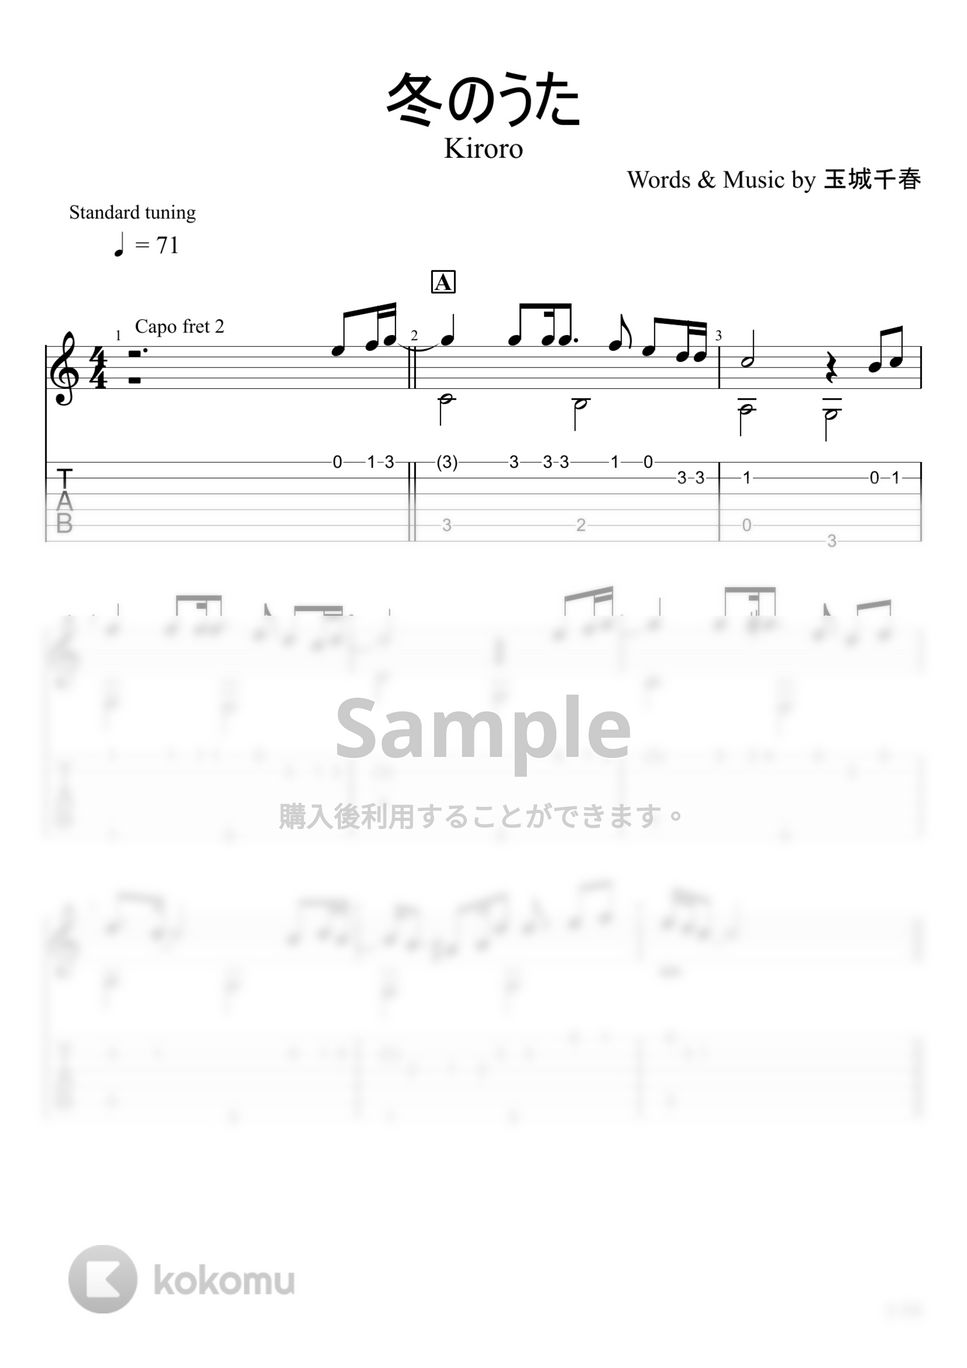 Kiroro - 冬のうた (ソロギター) by u3danchou